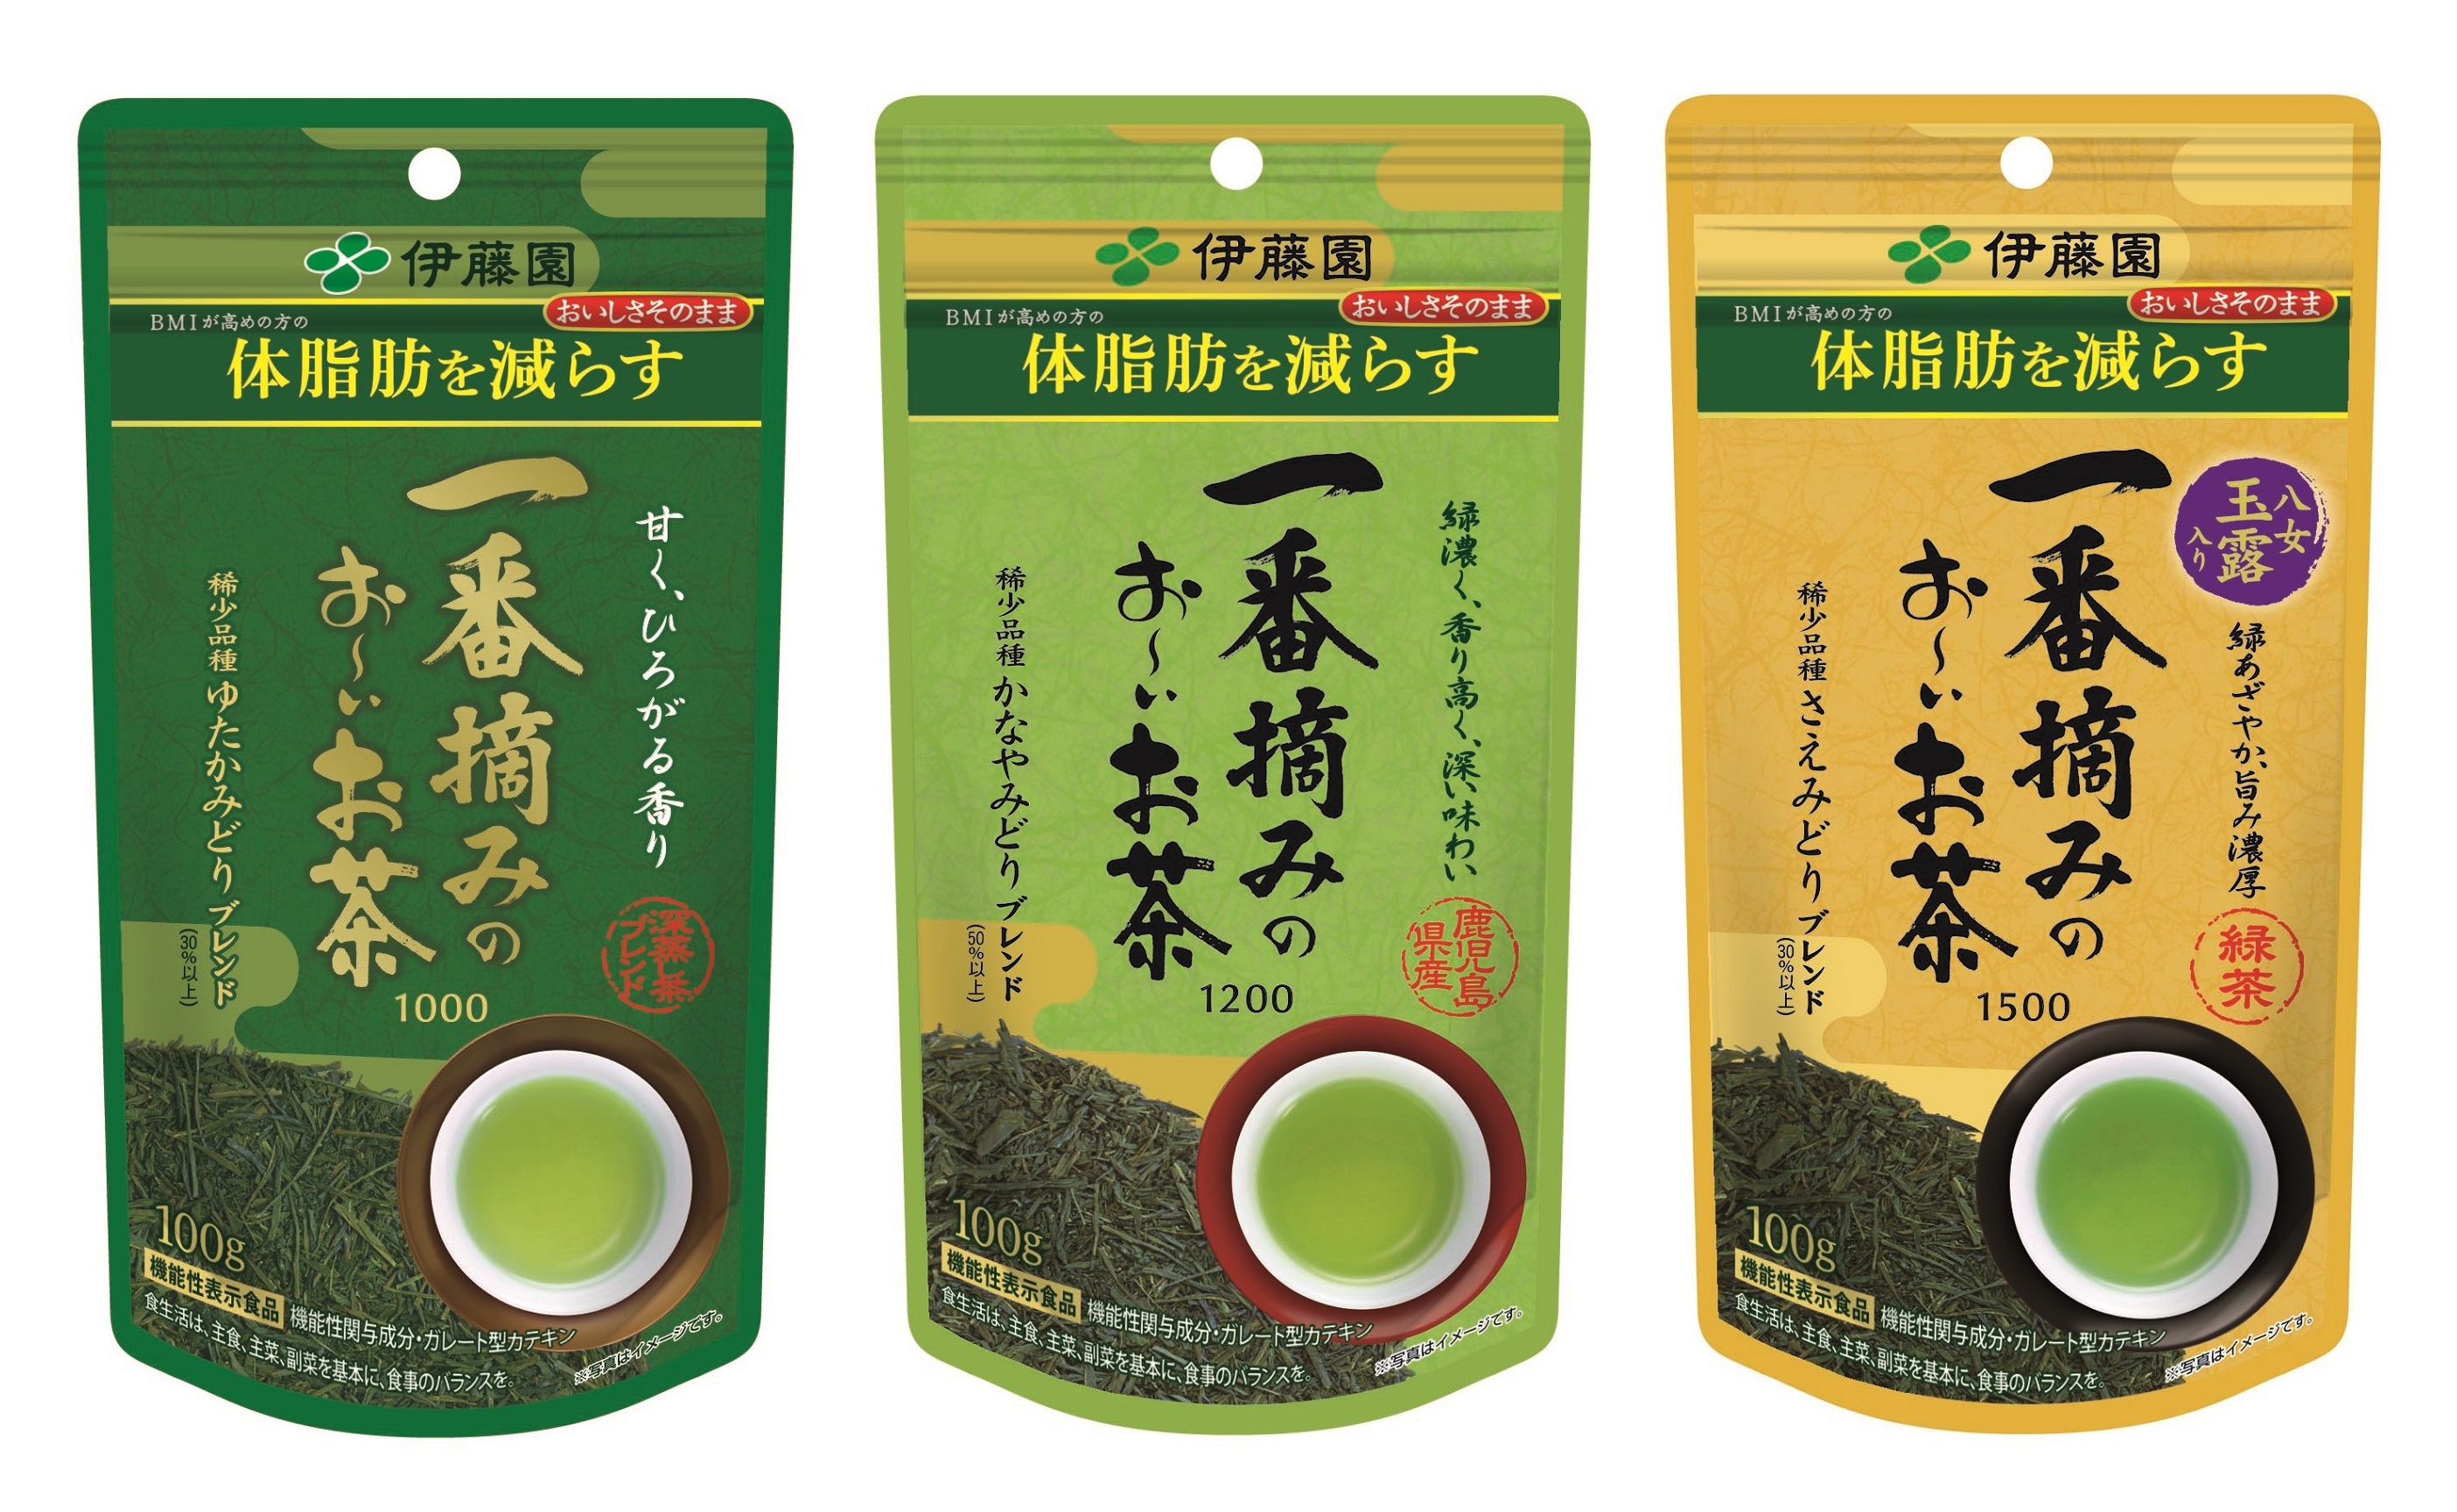 優れた品質 伊藤園 一番摘みのおーいお茶 1000 ゆたかみどりブレンド